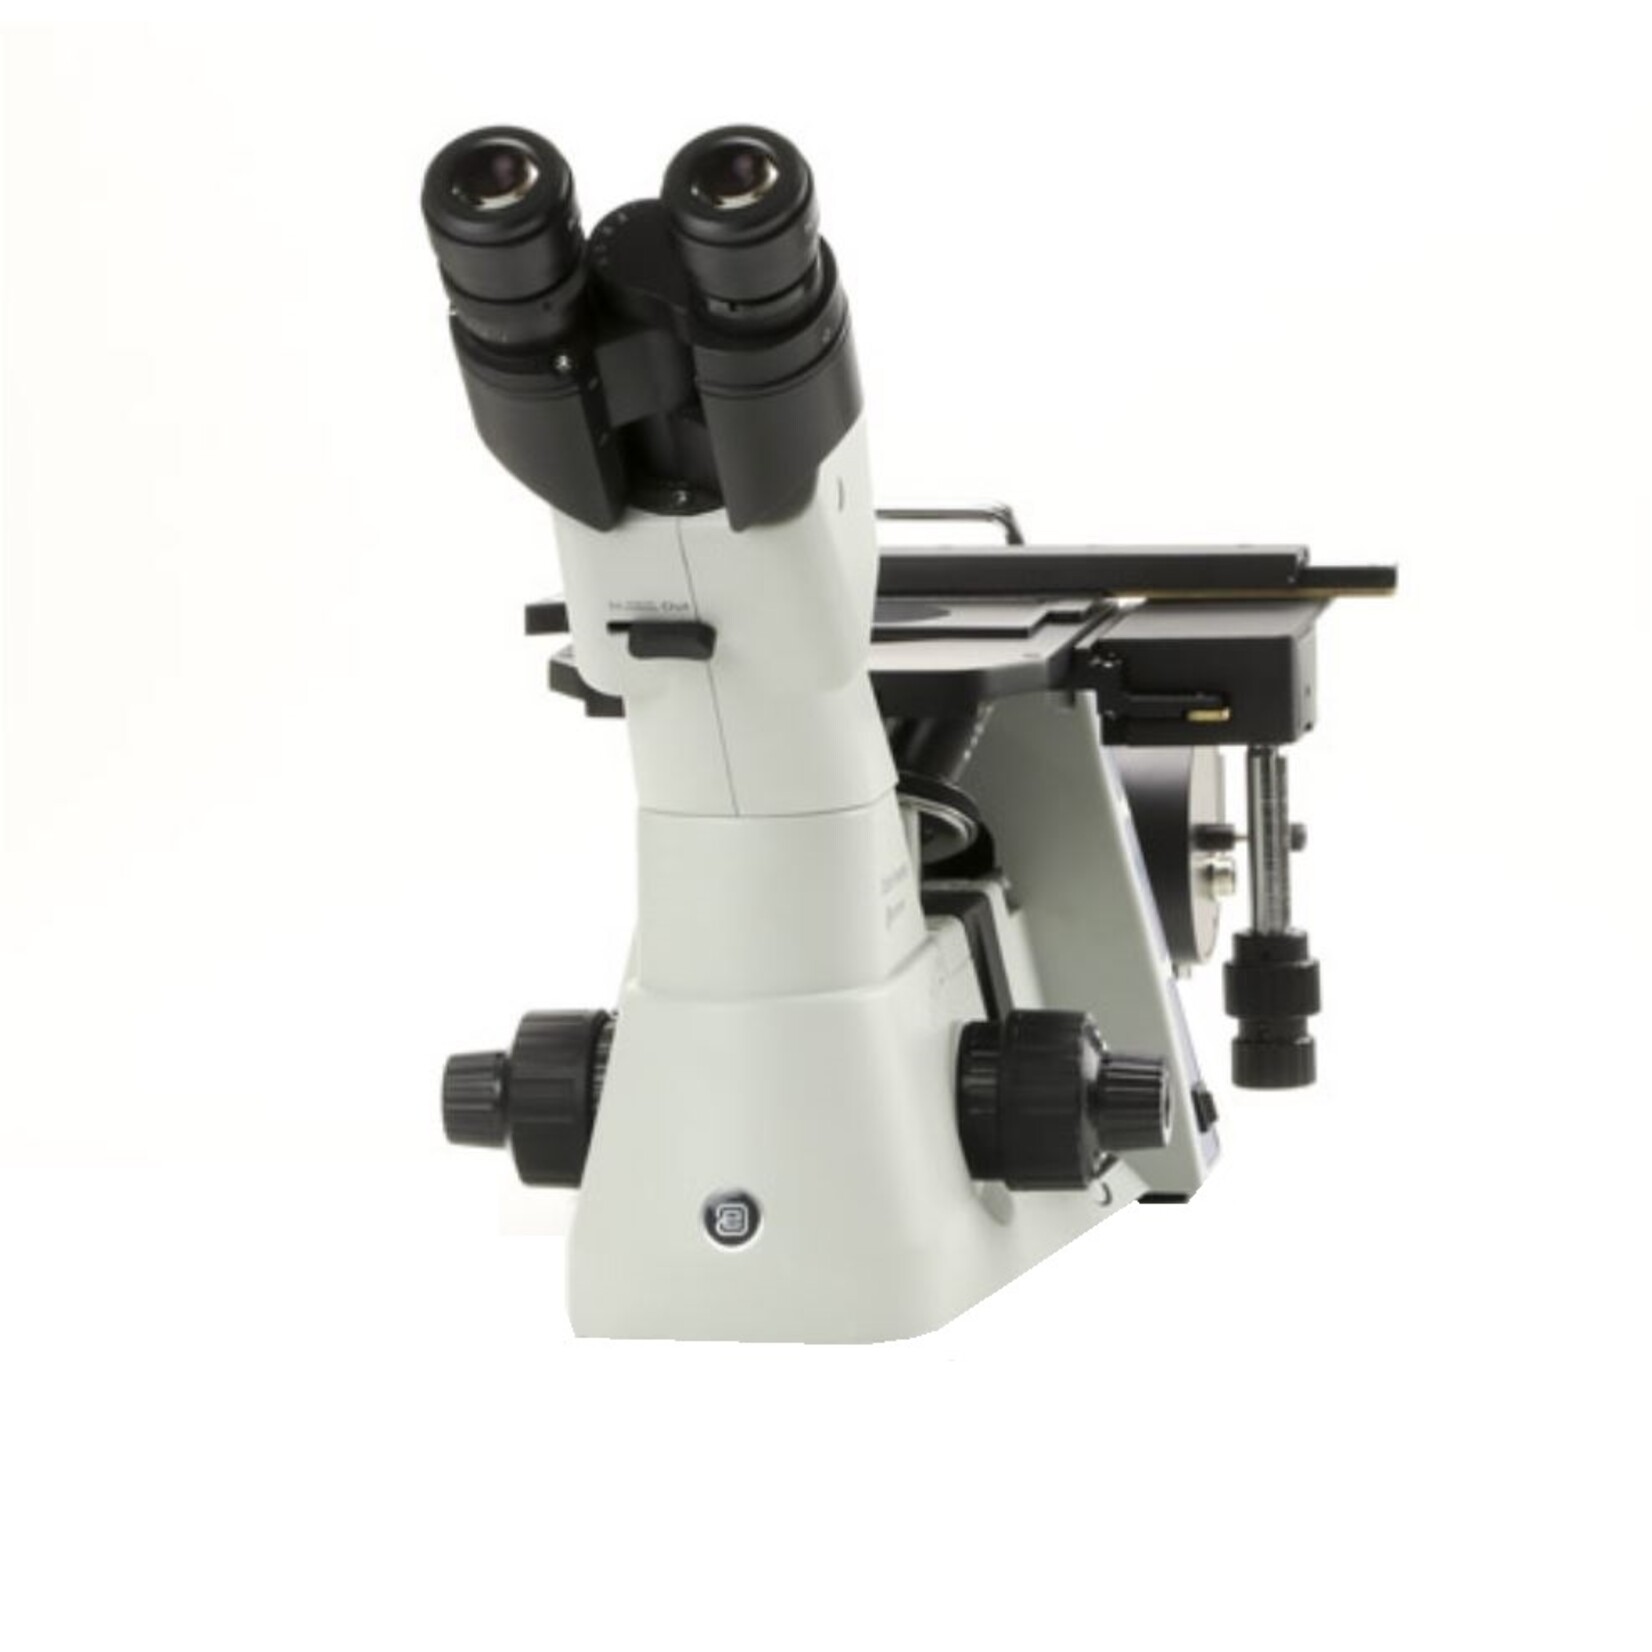 Inverso Microscopio metallurgico Oxion Inverso